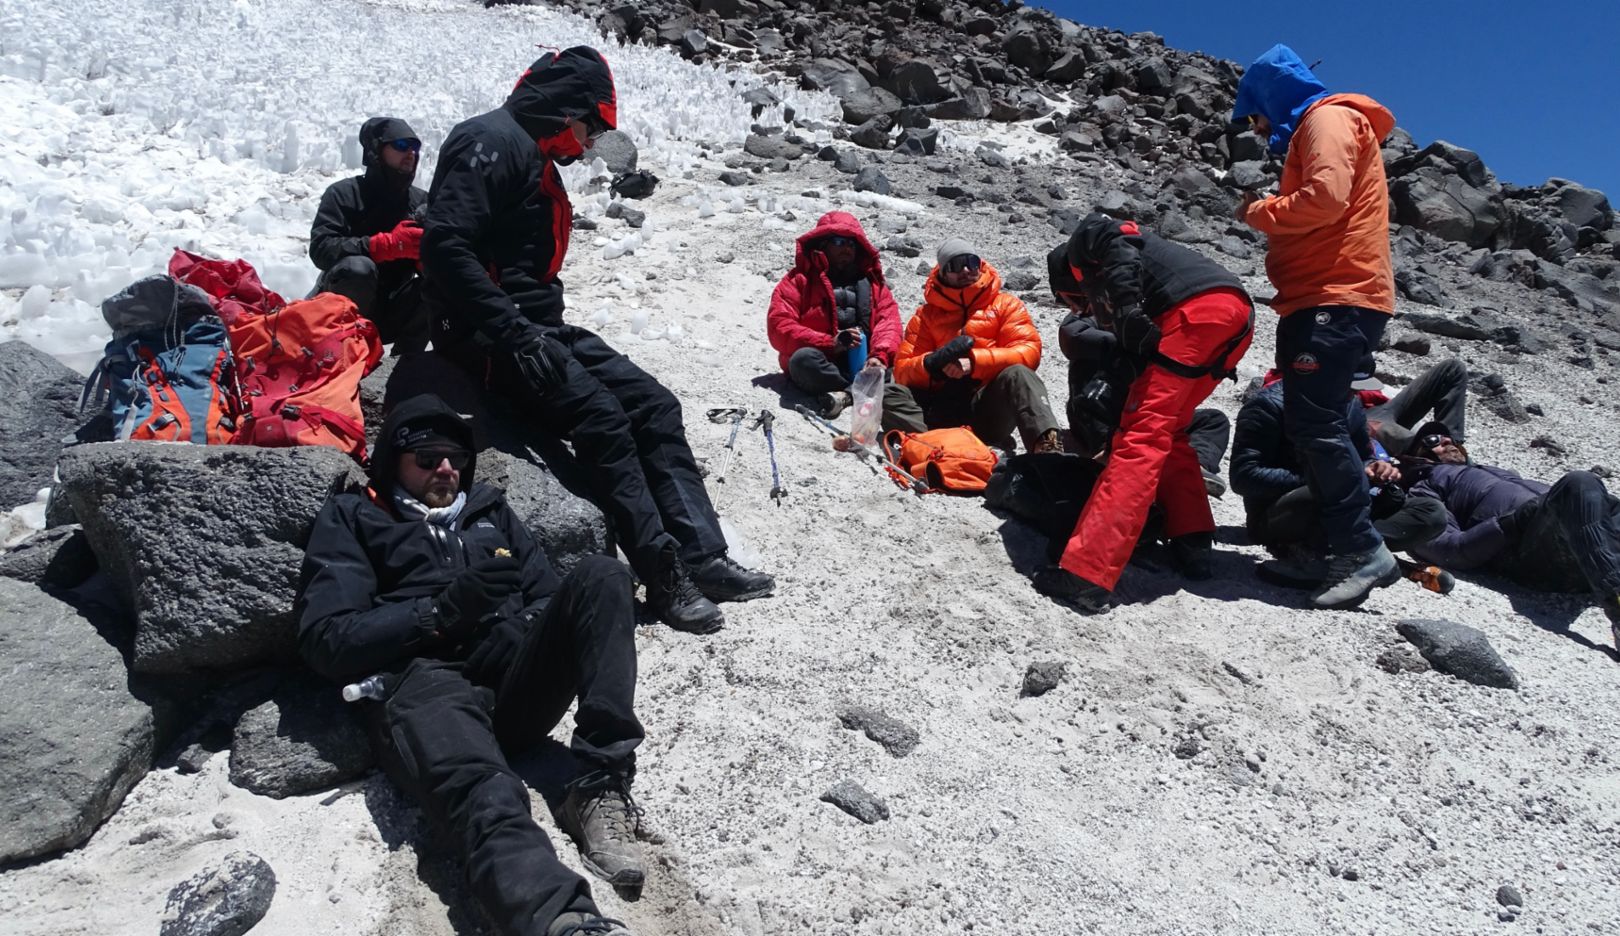 Sonder les limites : l’équipe a été accompagnée par des alpinistes européens, des guides de montagne chiliens et deux médecins de montagne expérimentés.